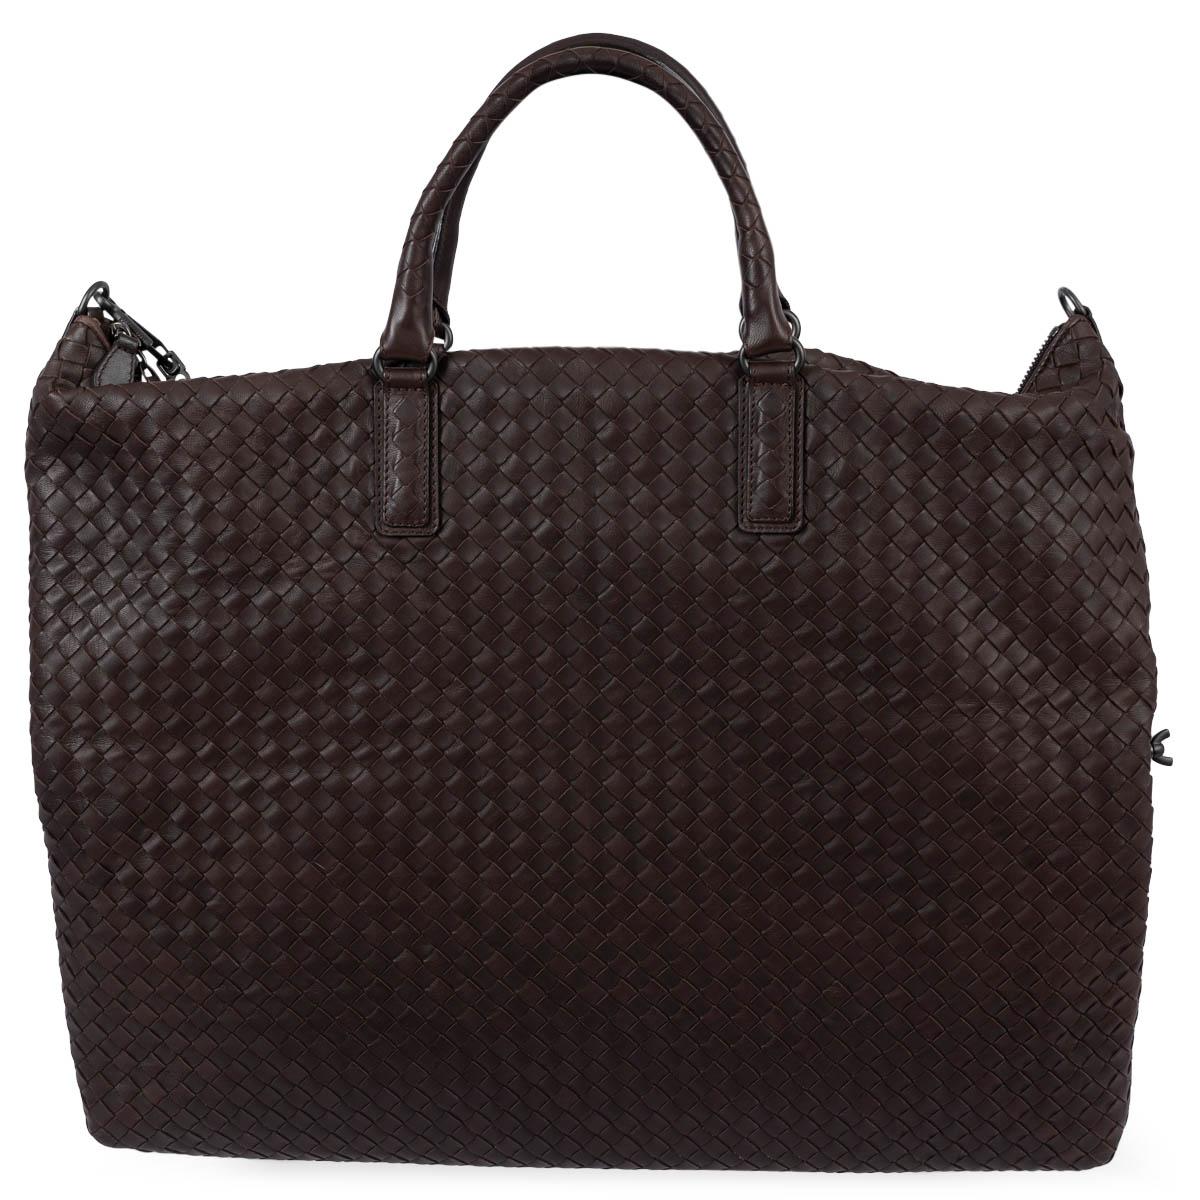 BOTTEGA VENETA Ebano brown leather INTRECCIATO MAXI CONVERTIBLE TOTE Bag In Excellent Condition For Sale In Zürich, CH